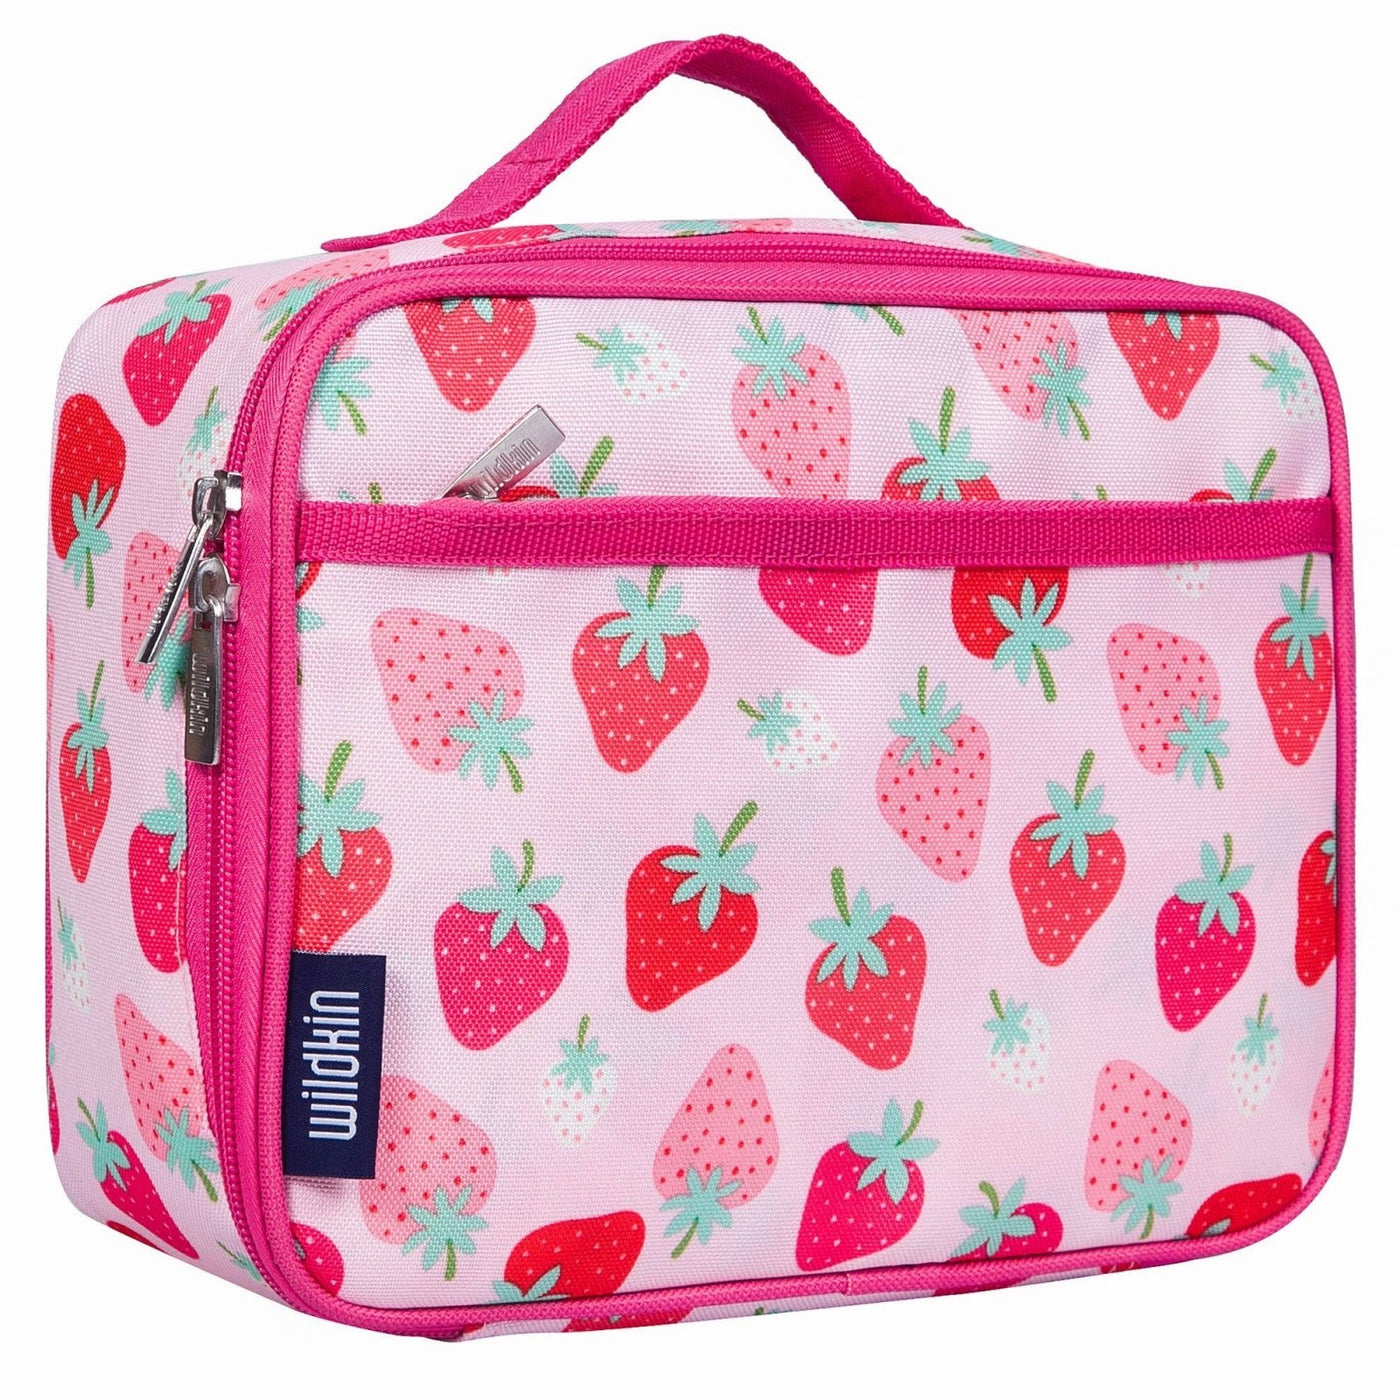 https://www.honeypiekids.com/cdn/shop/products/wildkin-strawberry-patch-kids-lunch-box-honeypiekids-kids-boutique-640346_1400x.jpg?v=1690481539